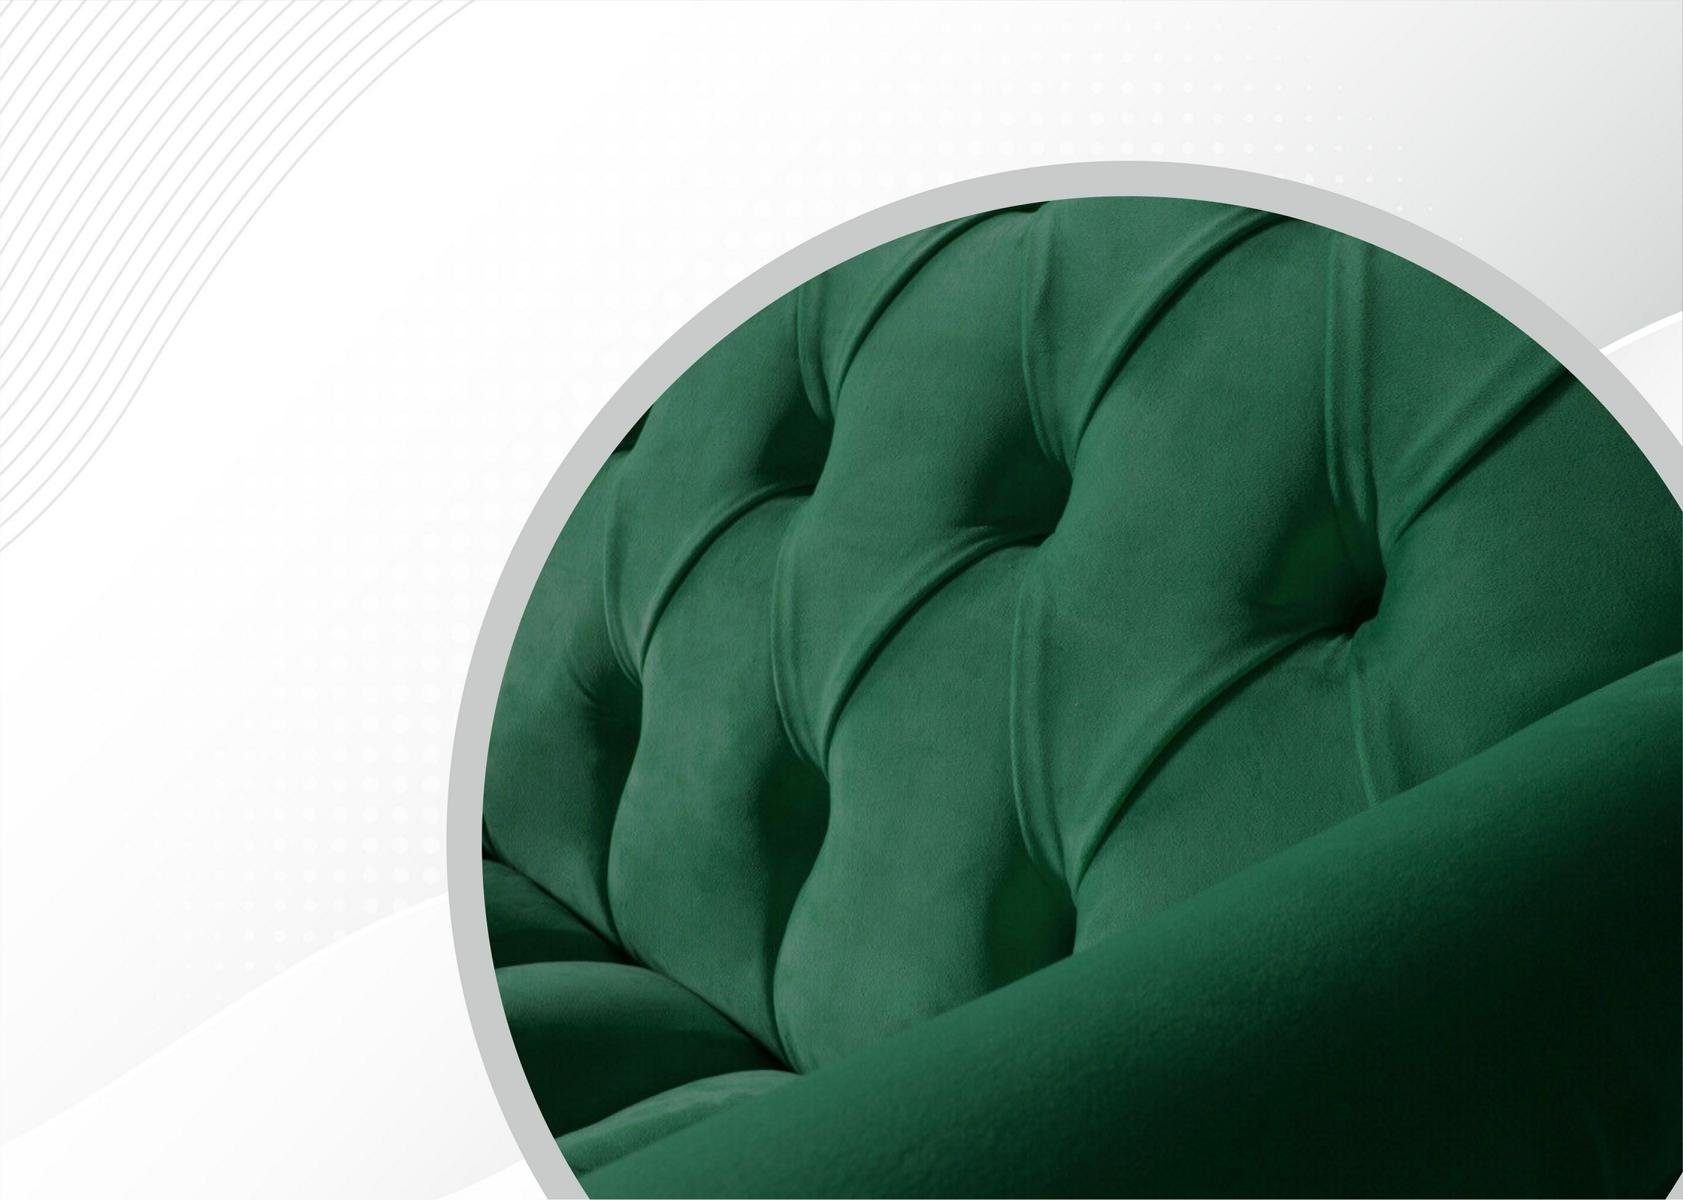 JVmoebel Chesterfield-Sofa, Luxus grüner Zweisitzer Möbel moderne Chesterfield Design